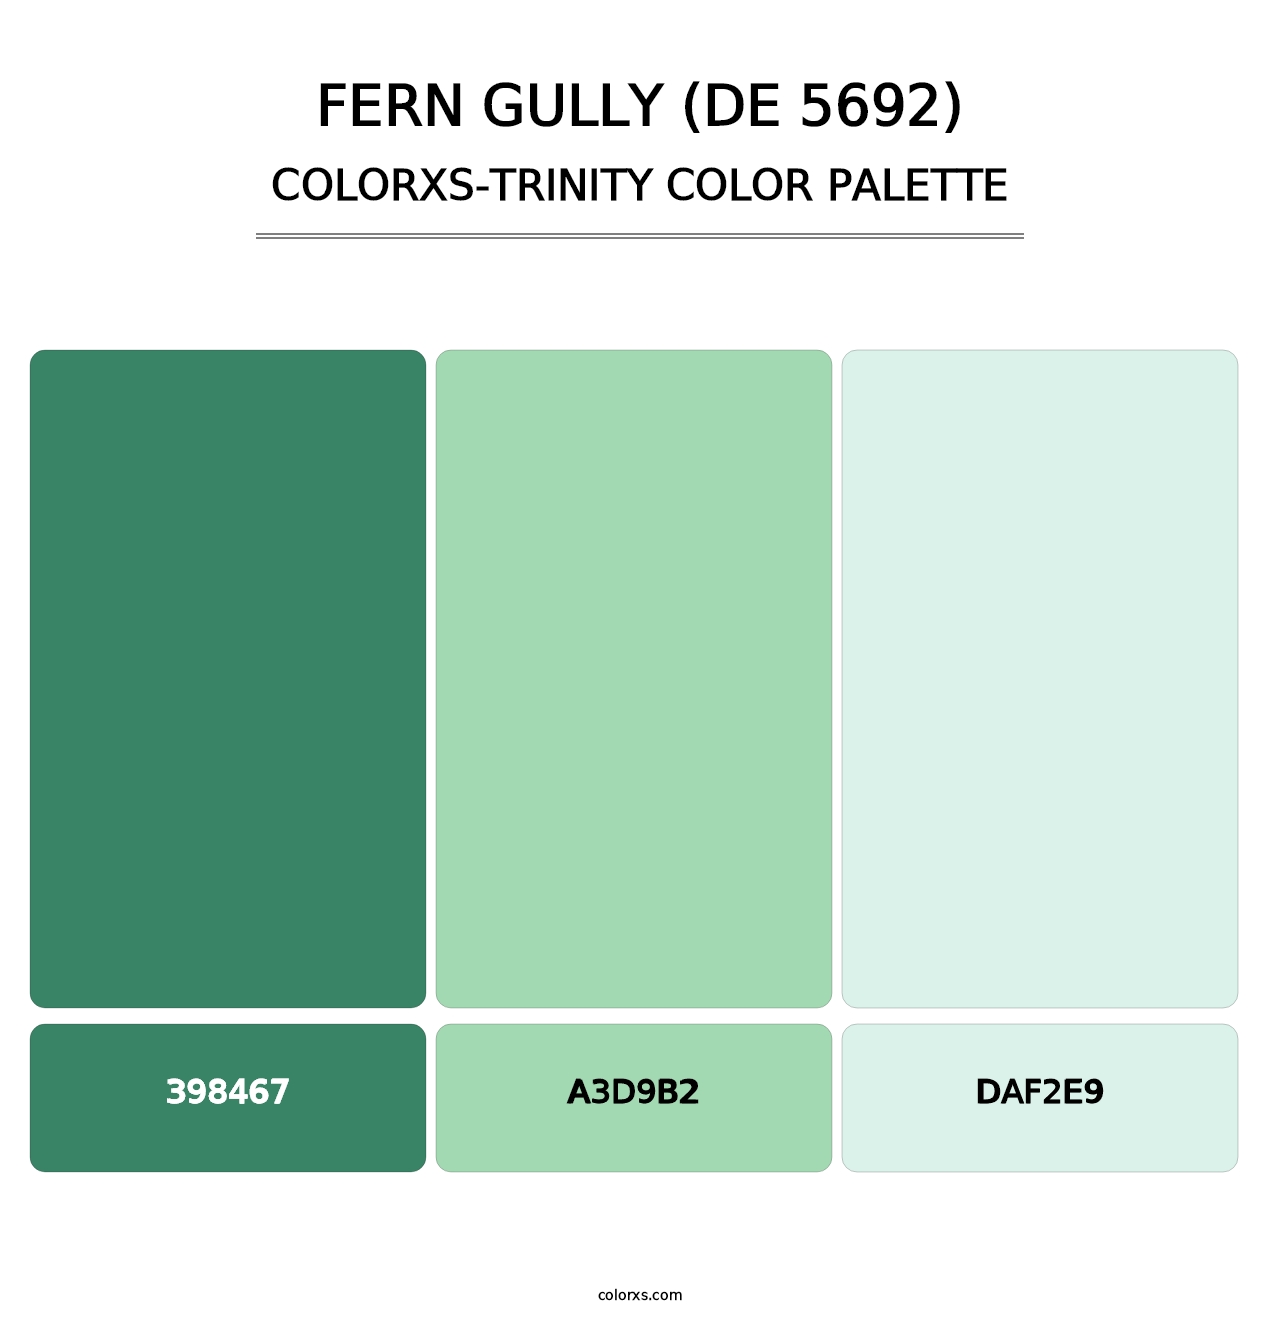 Fern Gully (DE 5692) - Colorxs Trinity Palette